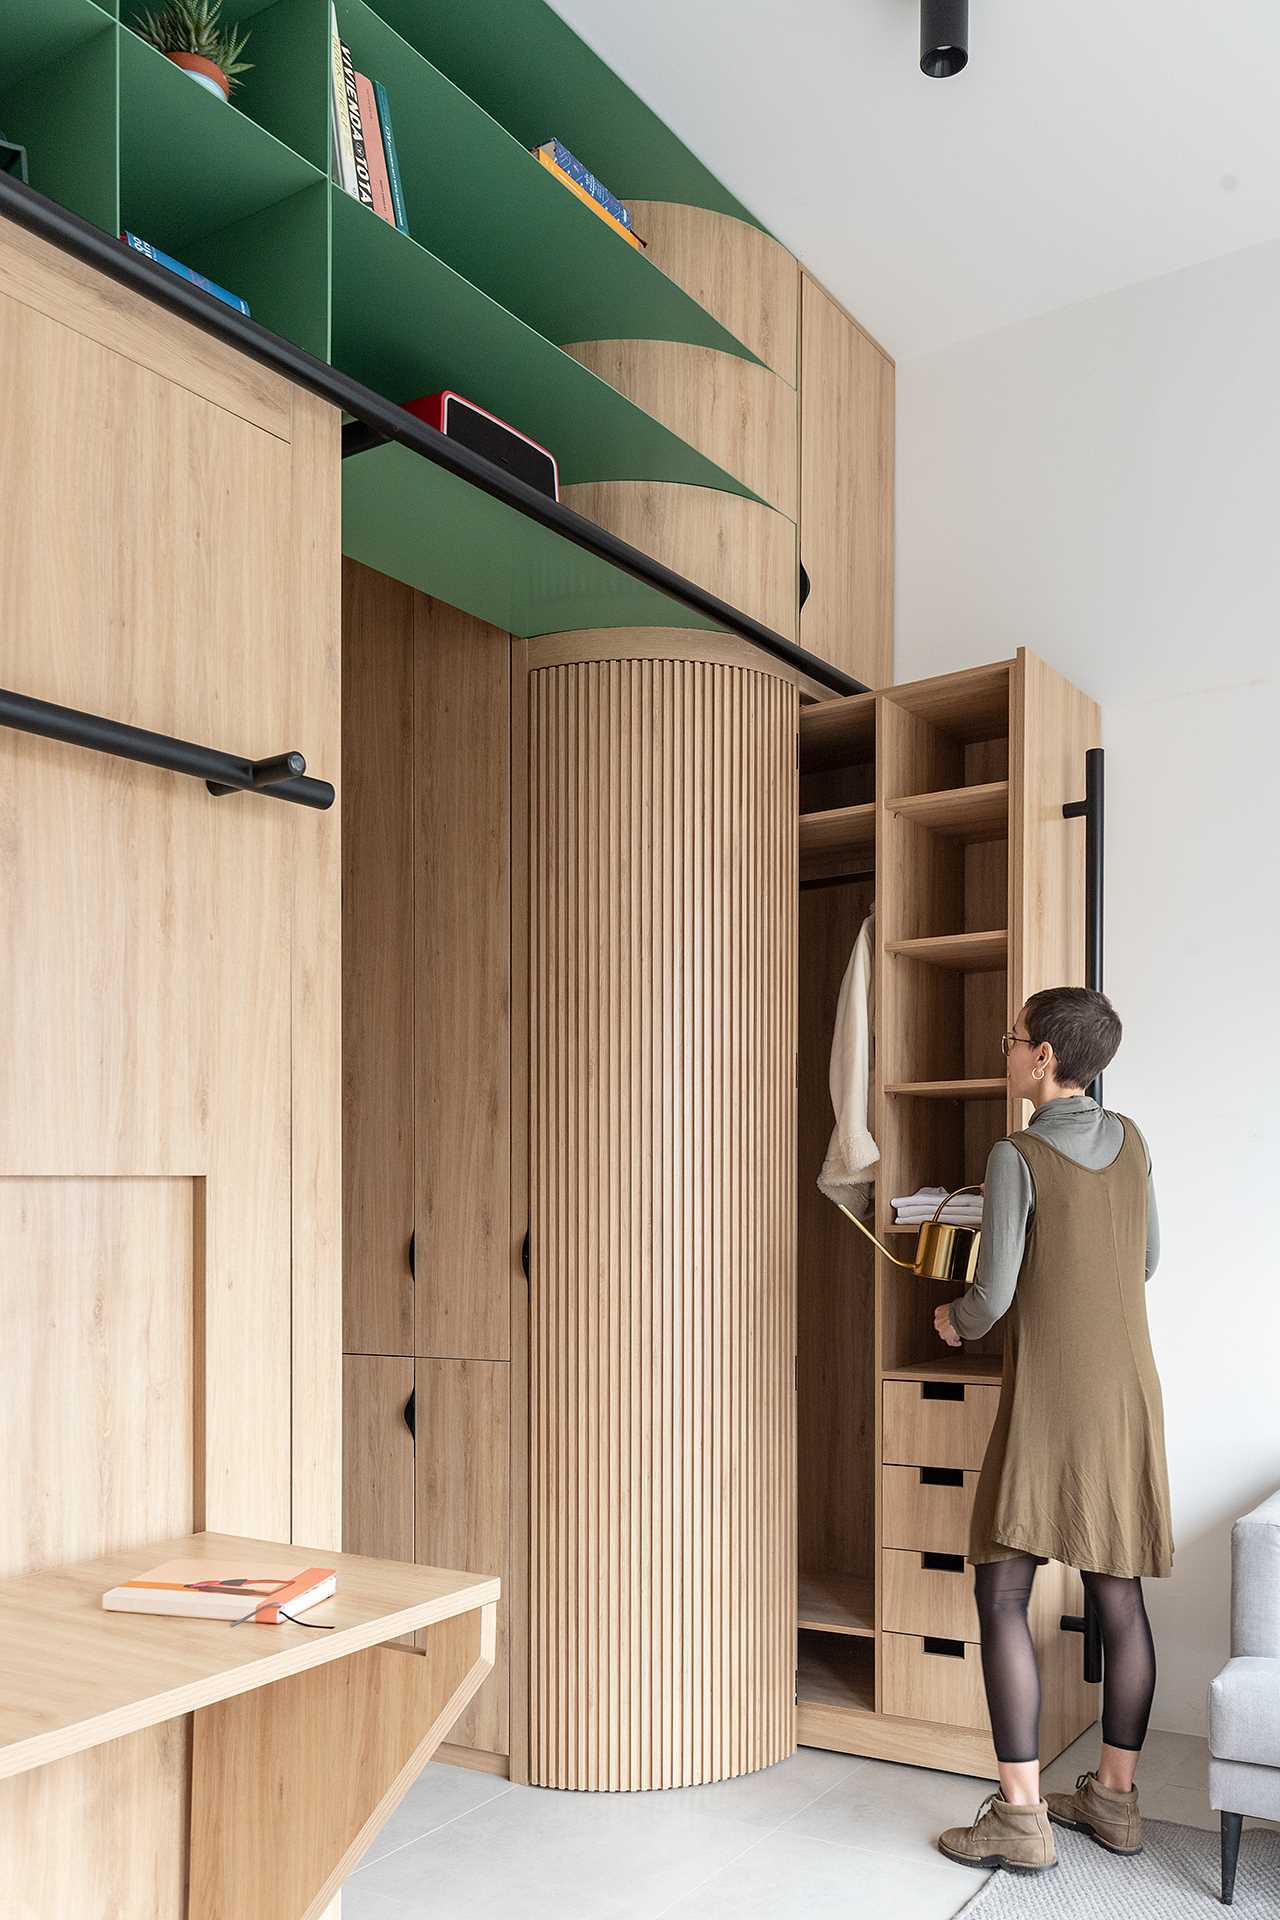 Thiết kế tủ đồ giúp tận dụng tối đa không gian trong căn hộ nhỏ - Ảnh 9.